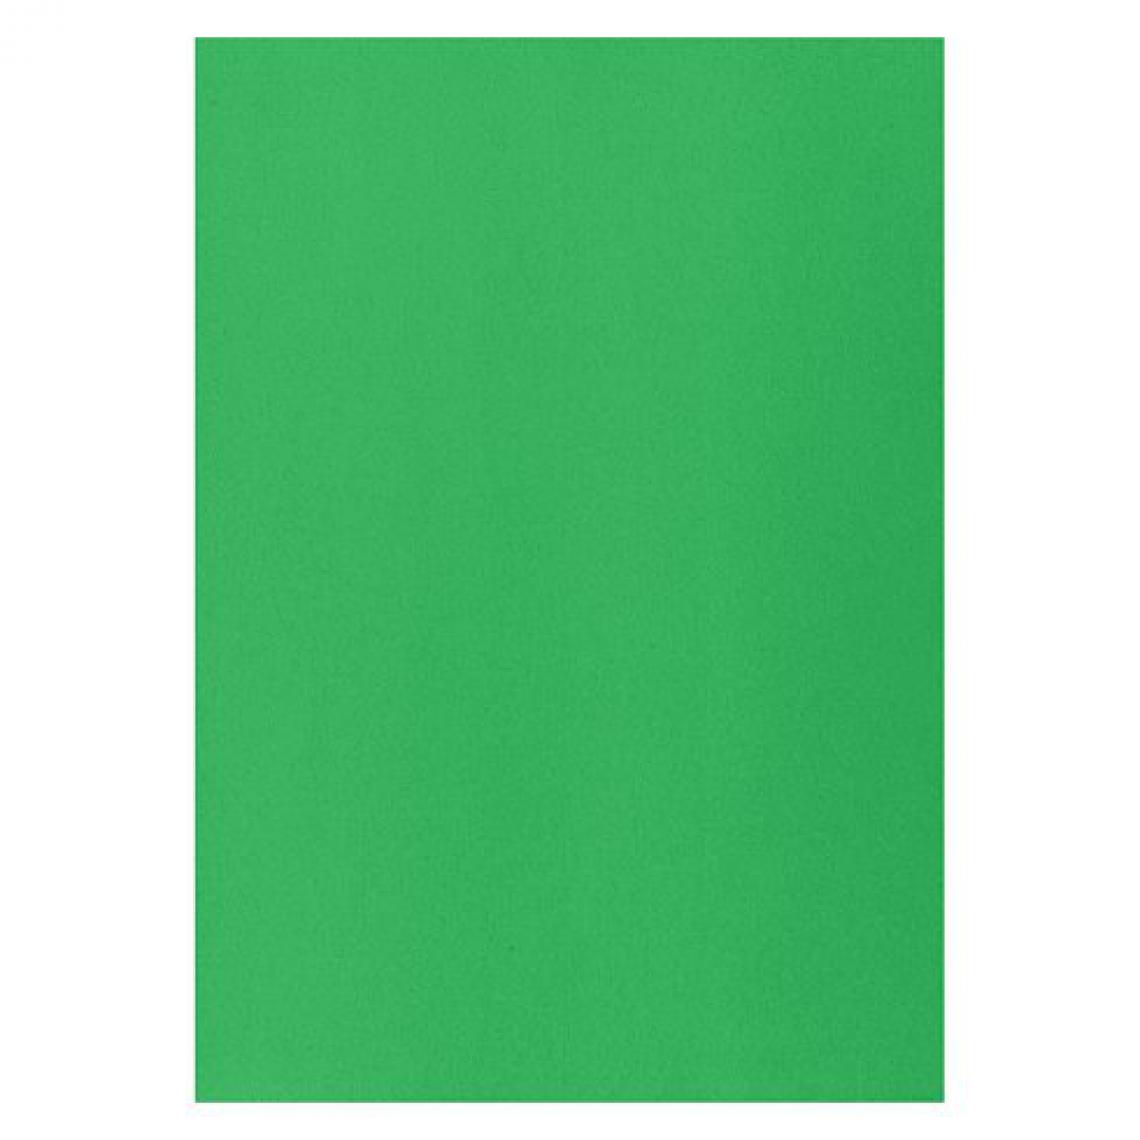 Techmay - Etiquettes couleurs 210 x 297 mm vertes - Boîte de 100 - Accessoires Bureau